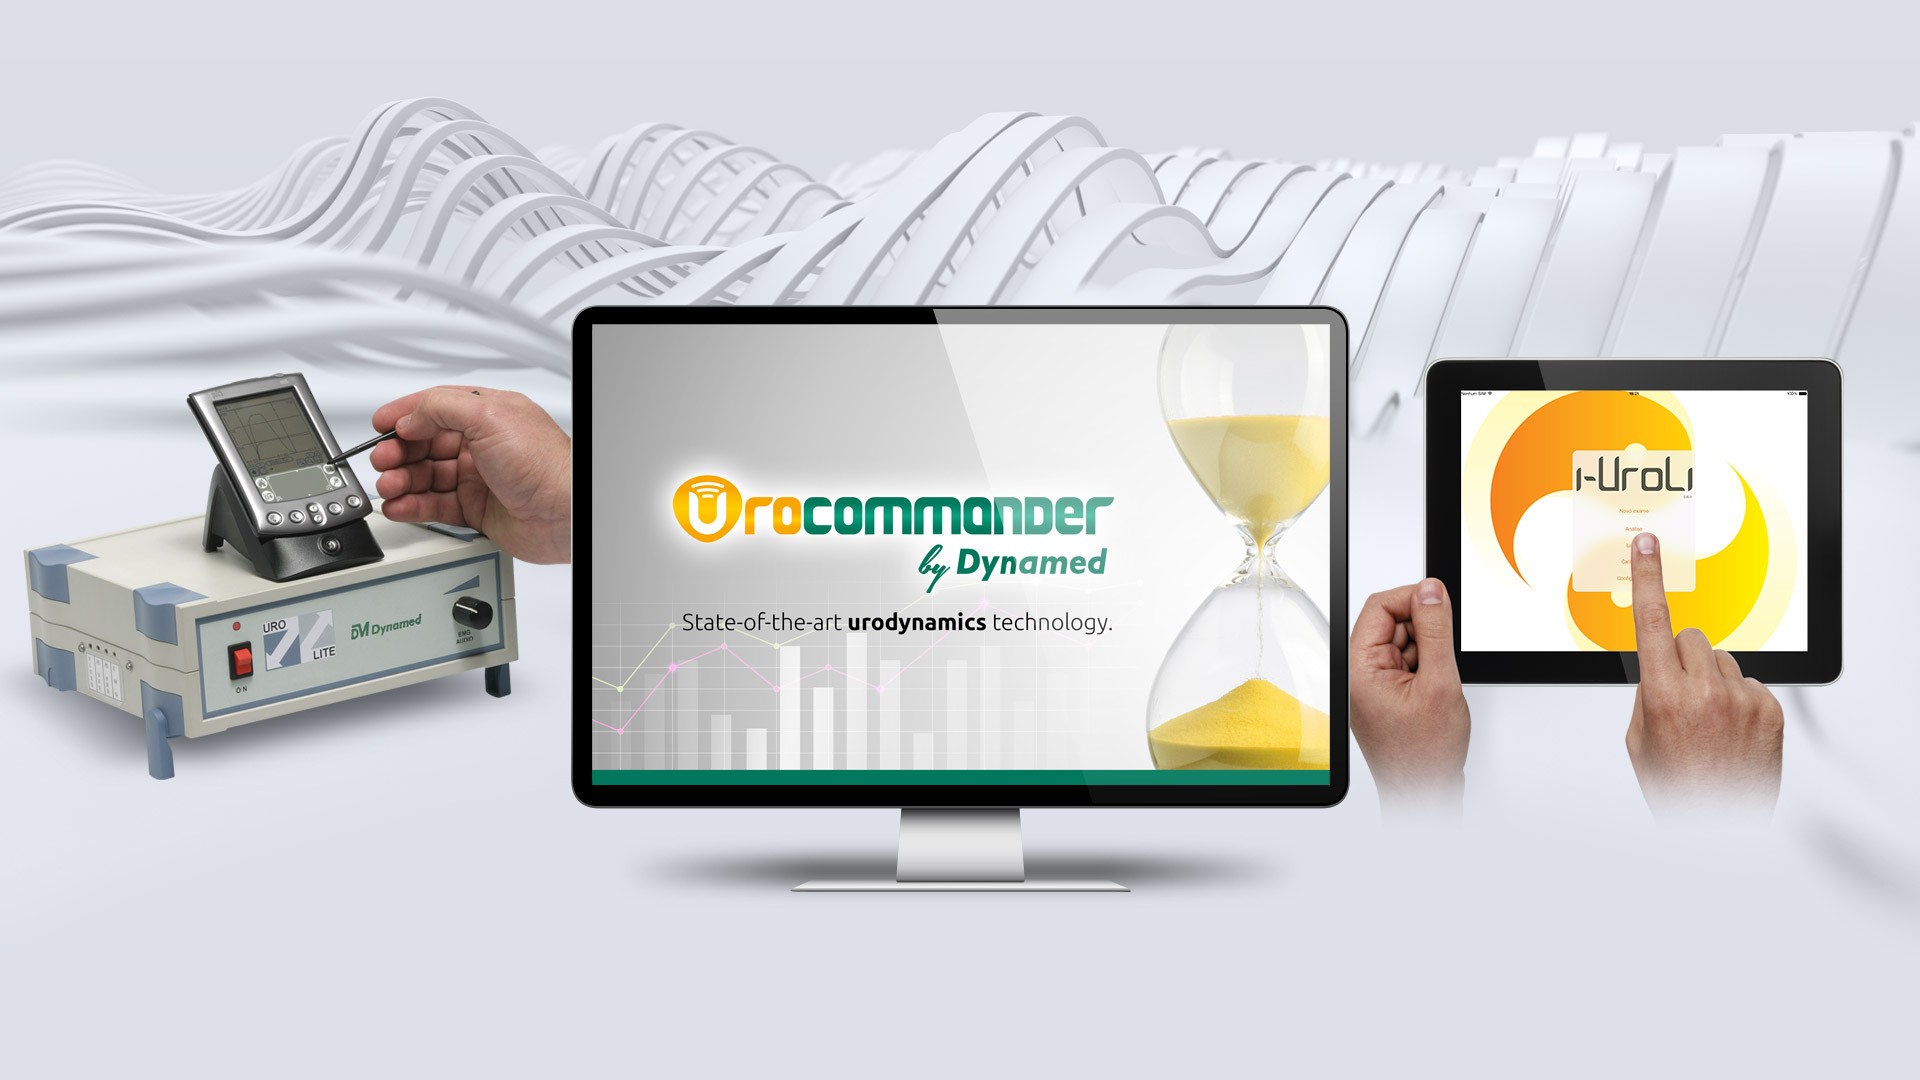 Chegou o Urocommander, o mais avançado software para Urodinâmica